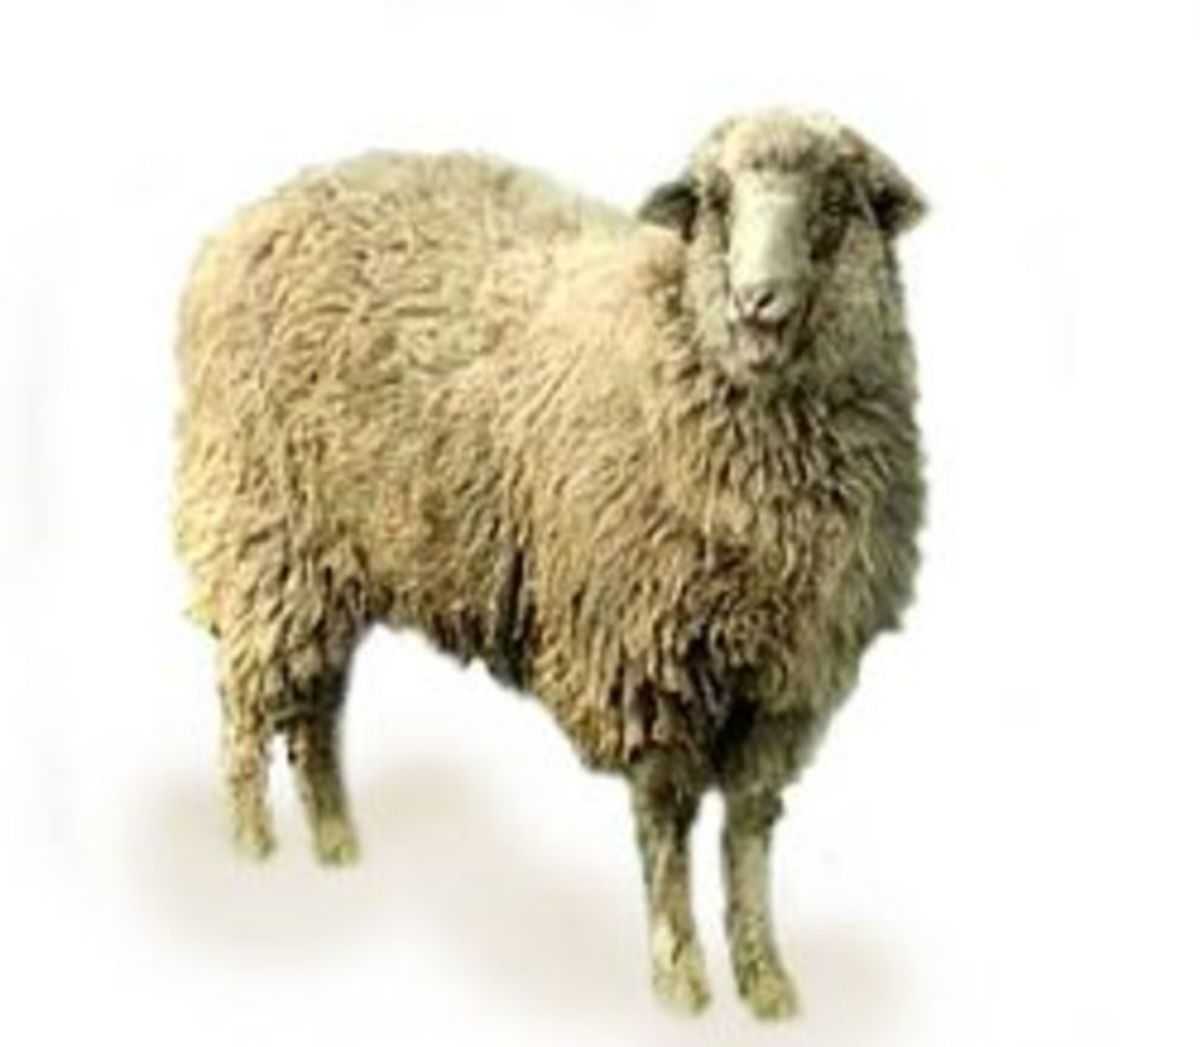 Куйбышевская порода овец: характеристика и описание